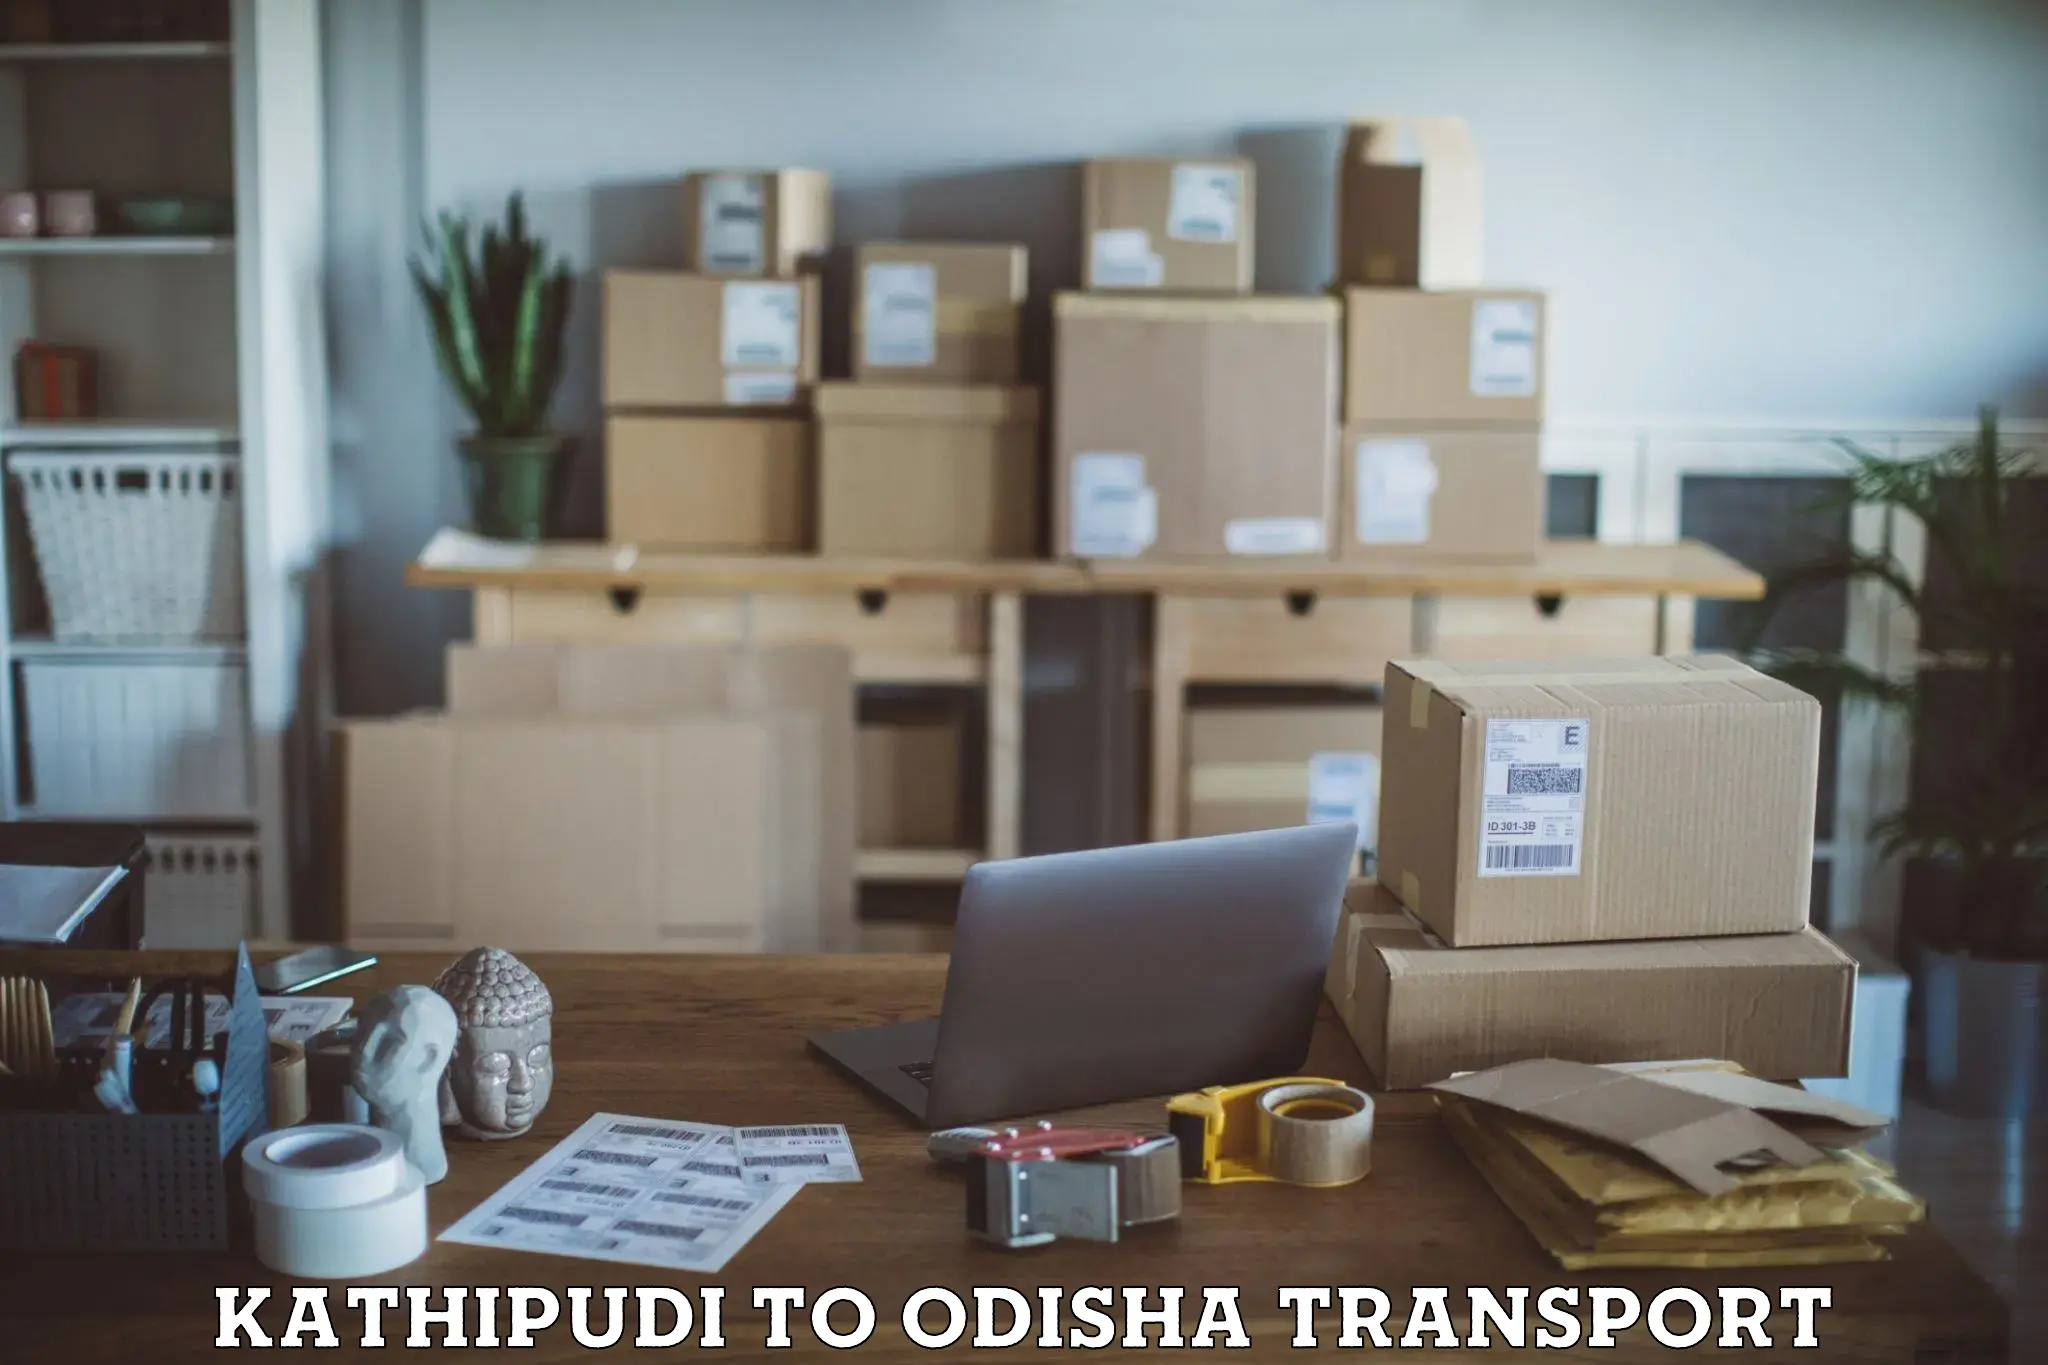 Transport shared services Kathipudi to Kendujhar